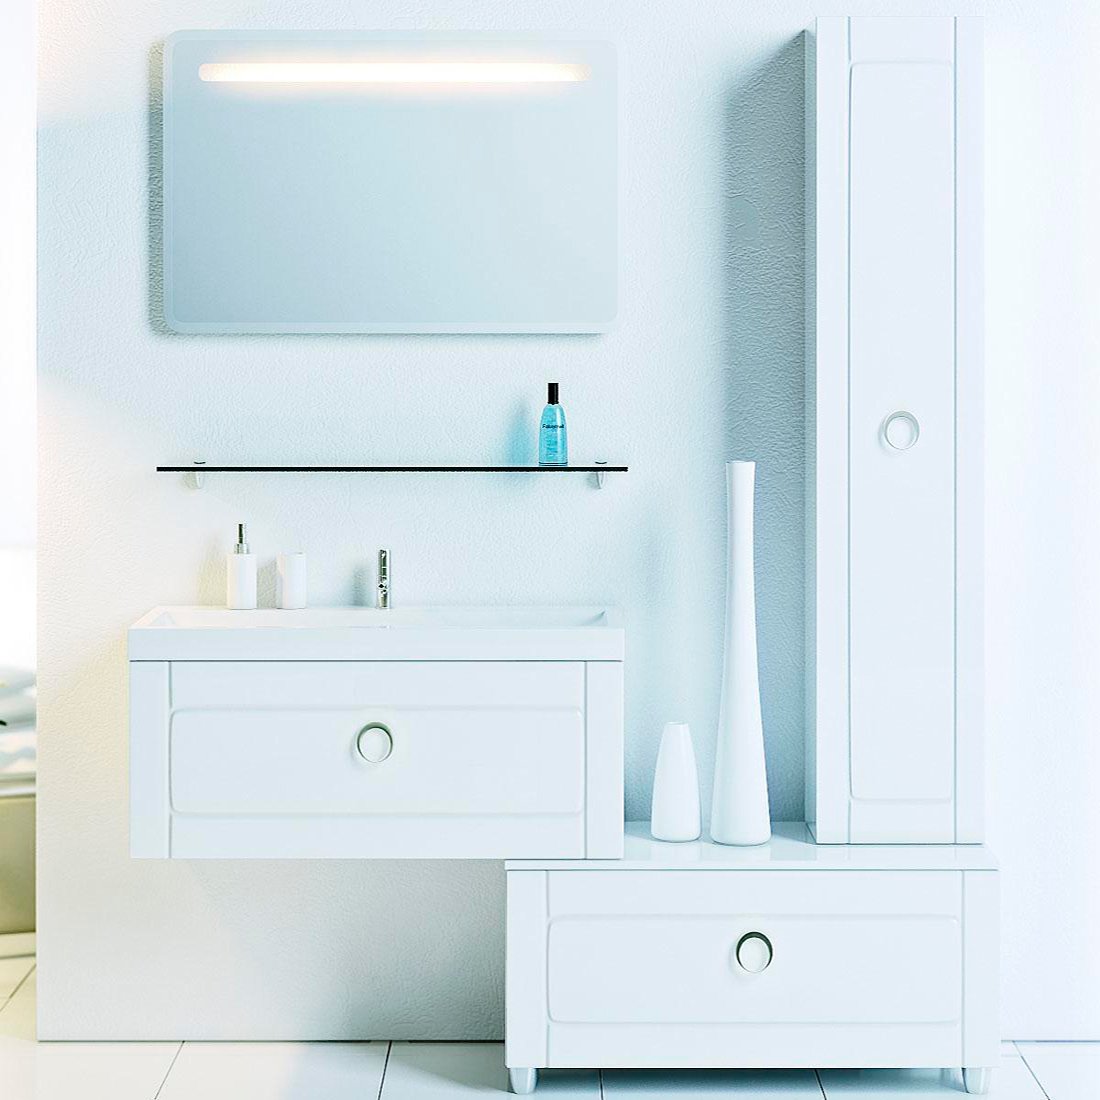 Мебель для ванной Aqwella 5 stars Инфинити 80 белая, комплект (гарнитур), белый  - купить со скидкой